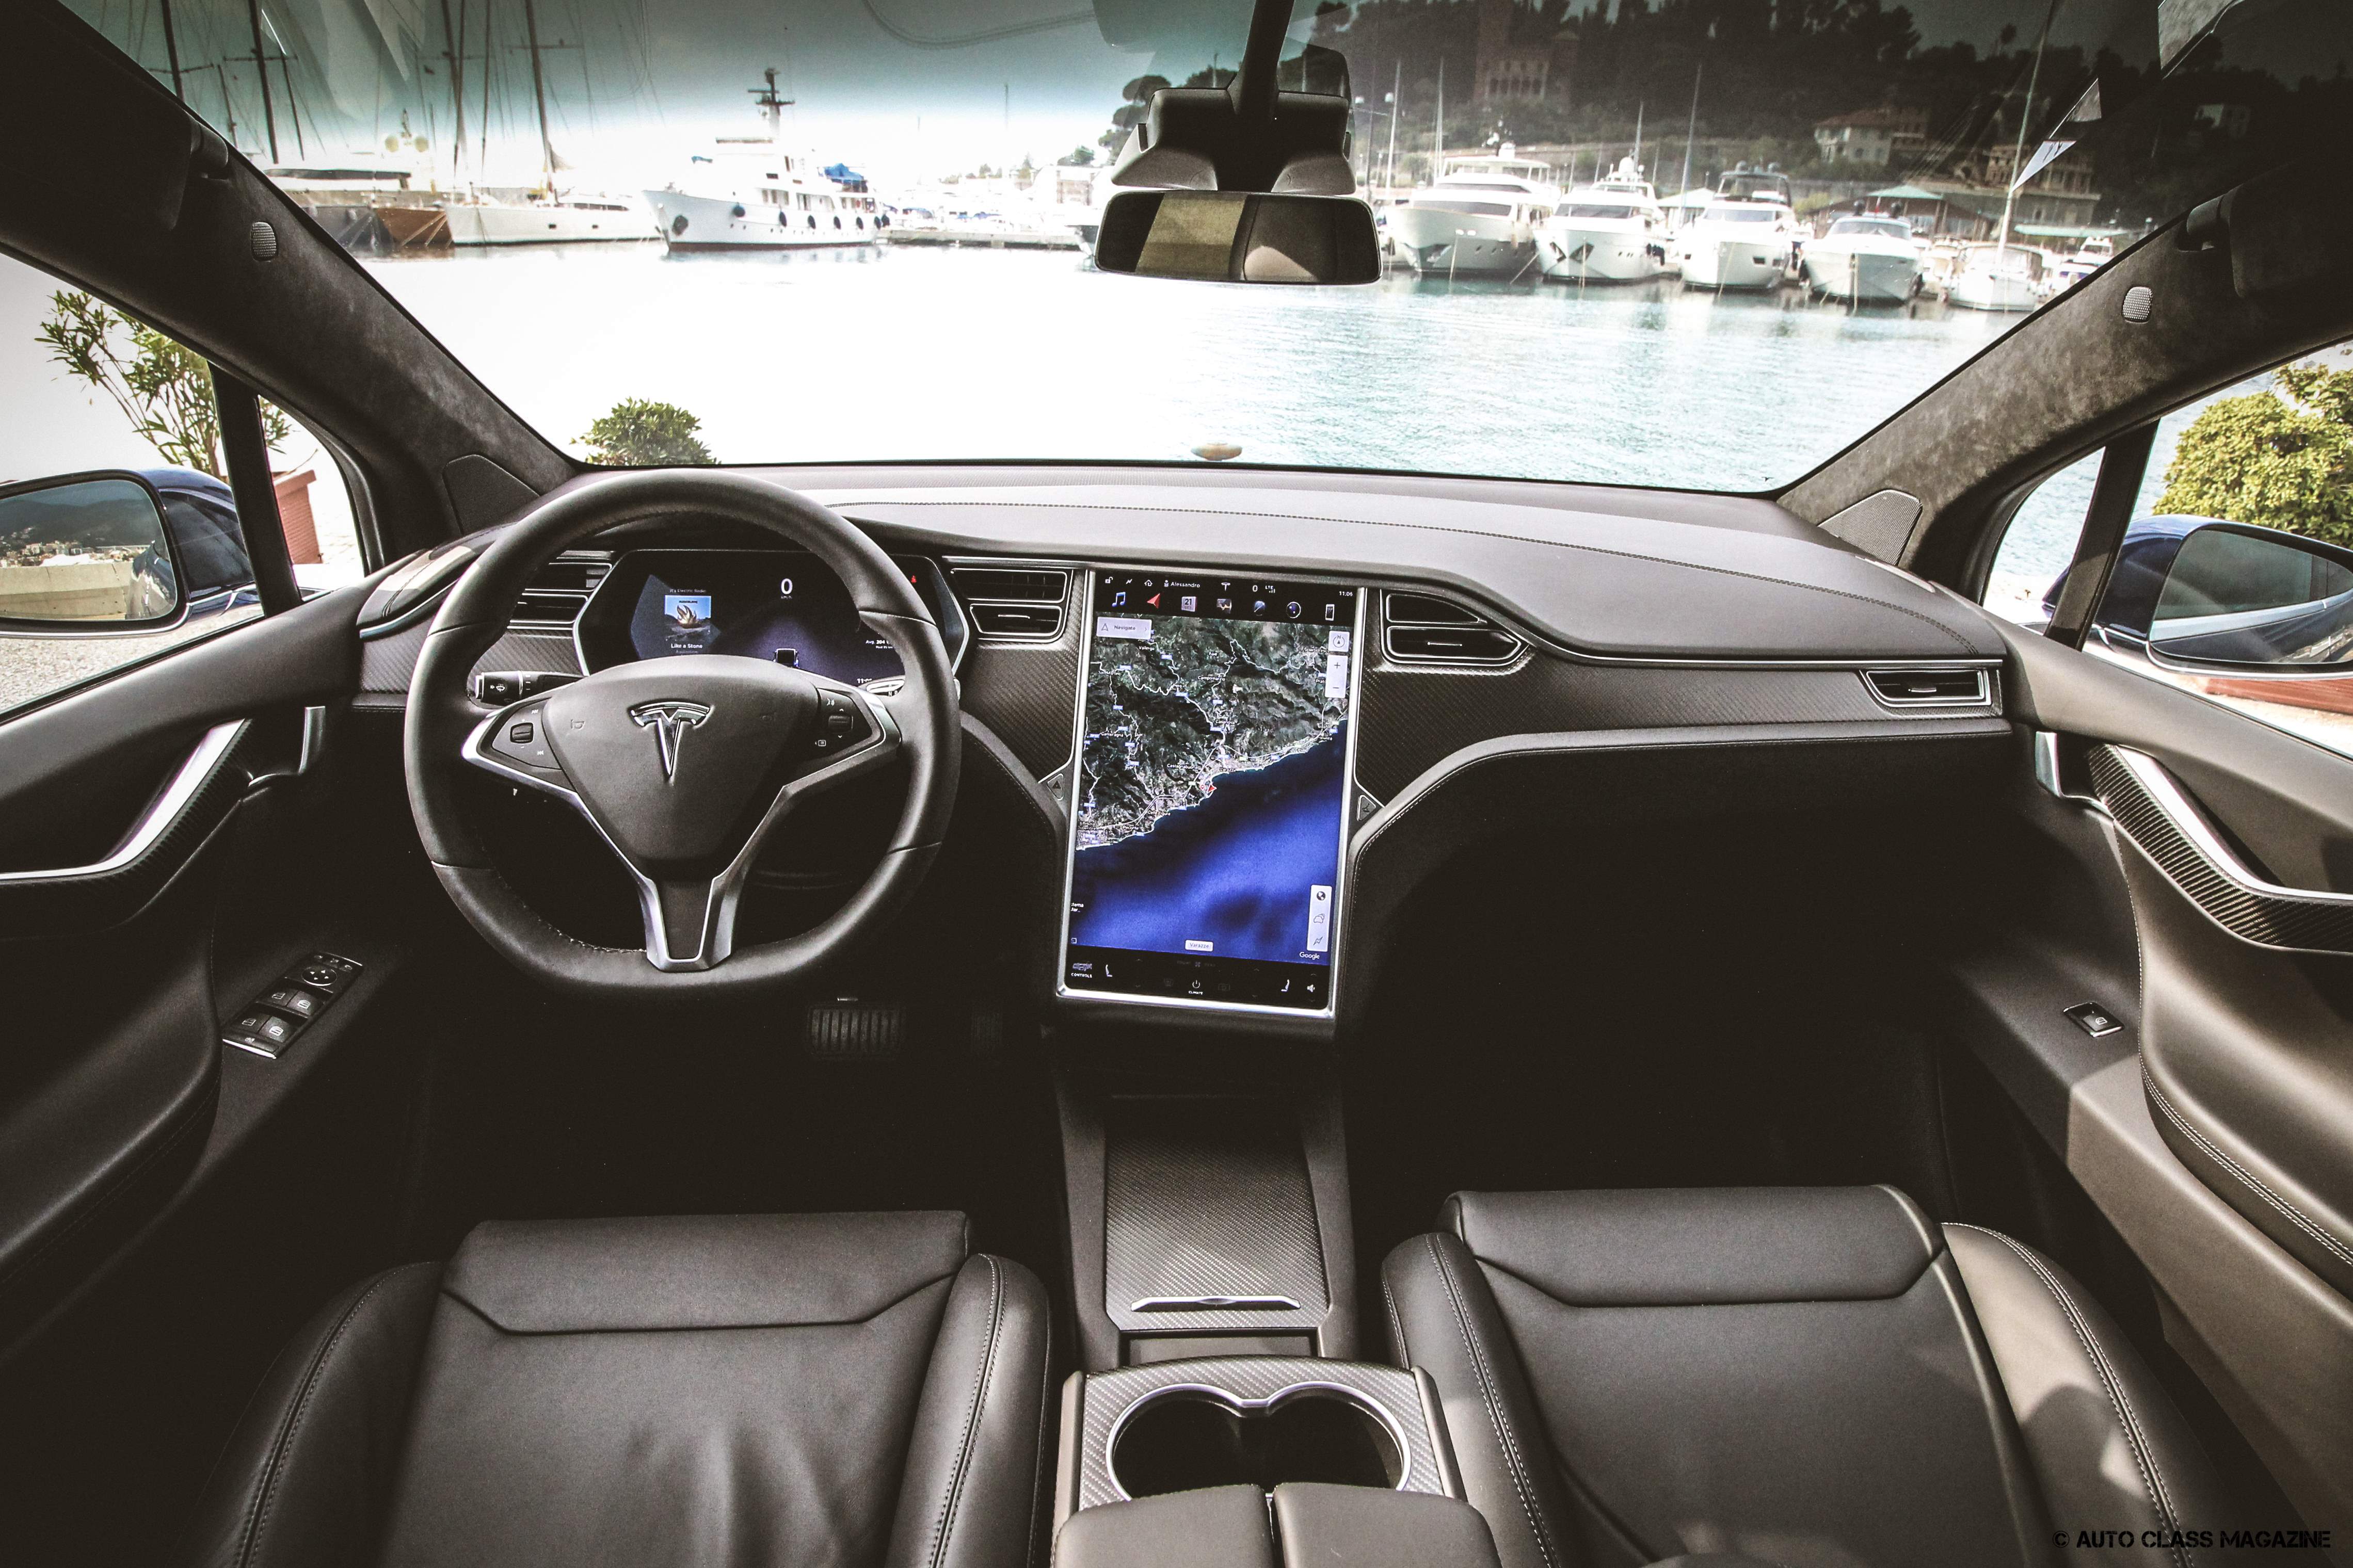 Bestuiven eend waarom Tesla Model X 100D: The X-Files | Auto Class Magazine